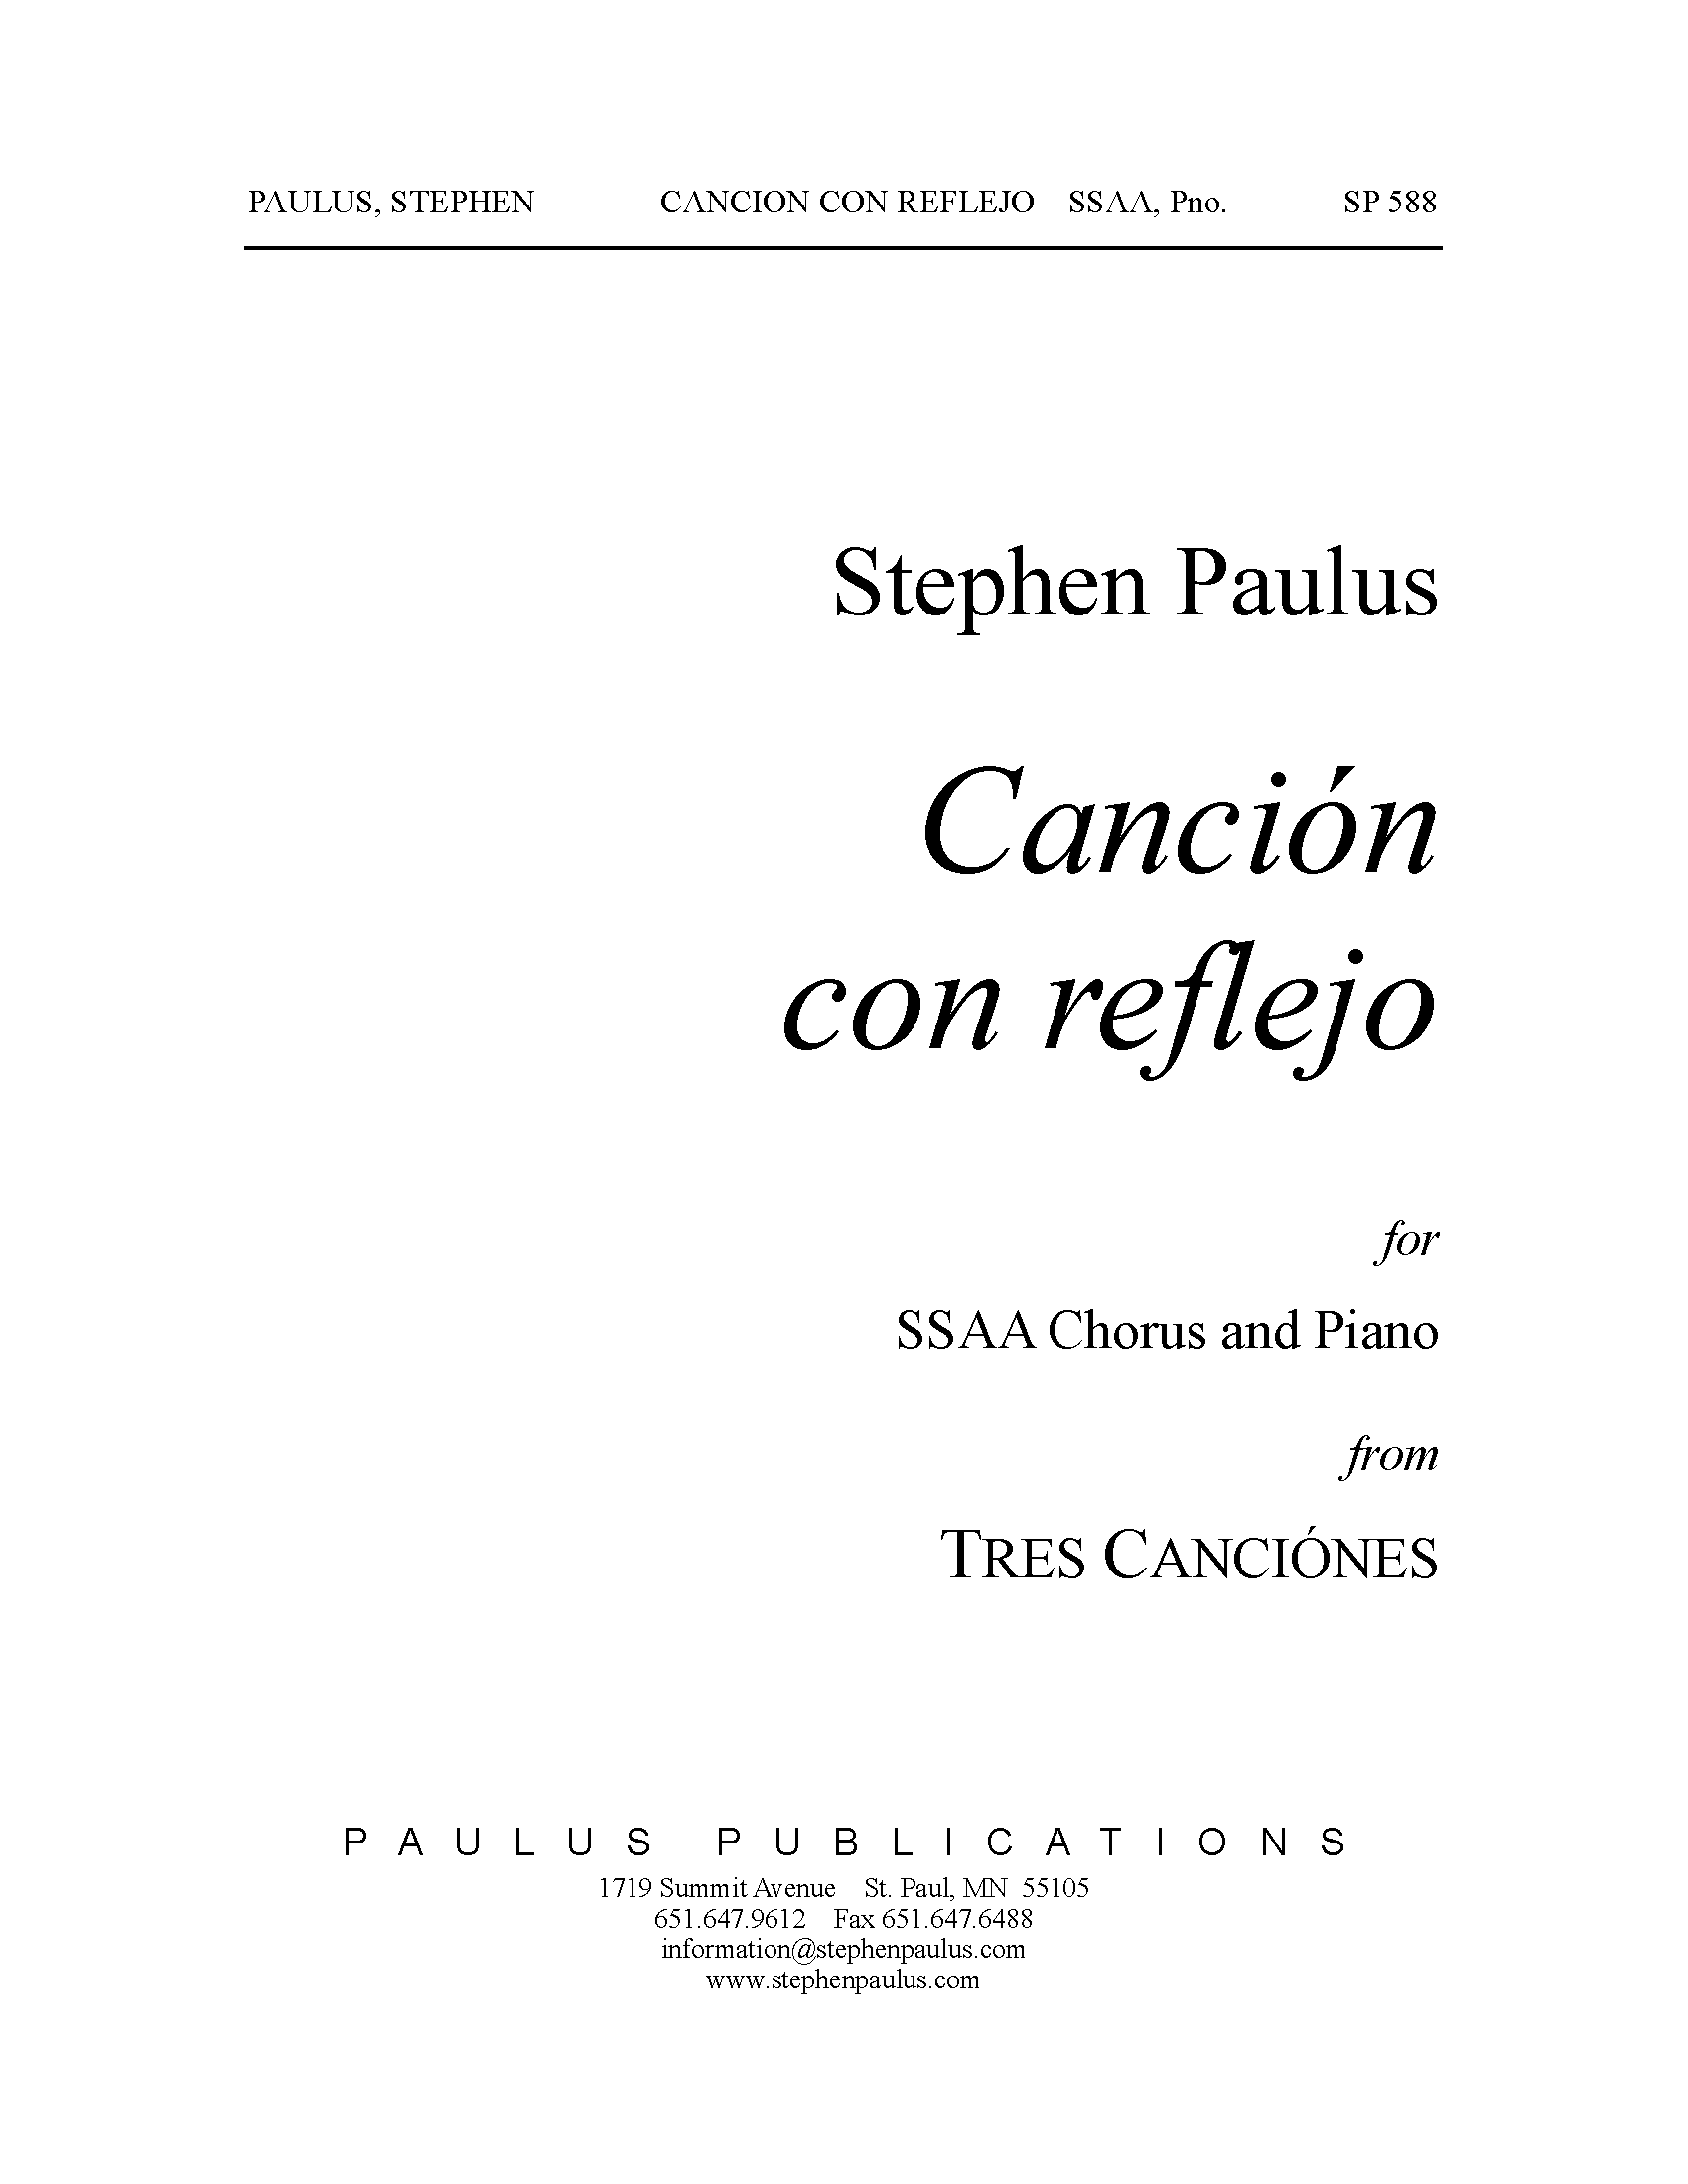 Canción con reflejo (from Tres Canciones) for SSAA Chorus & Piano